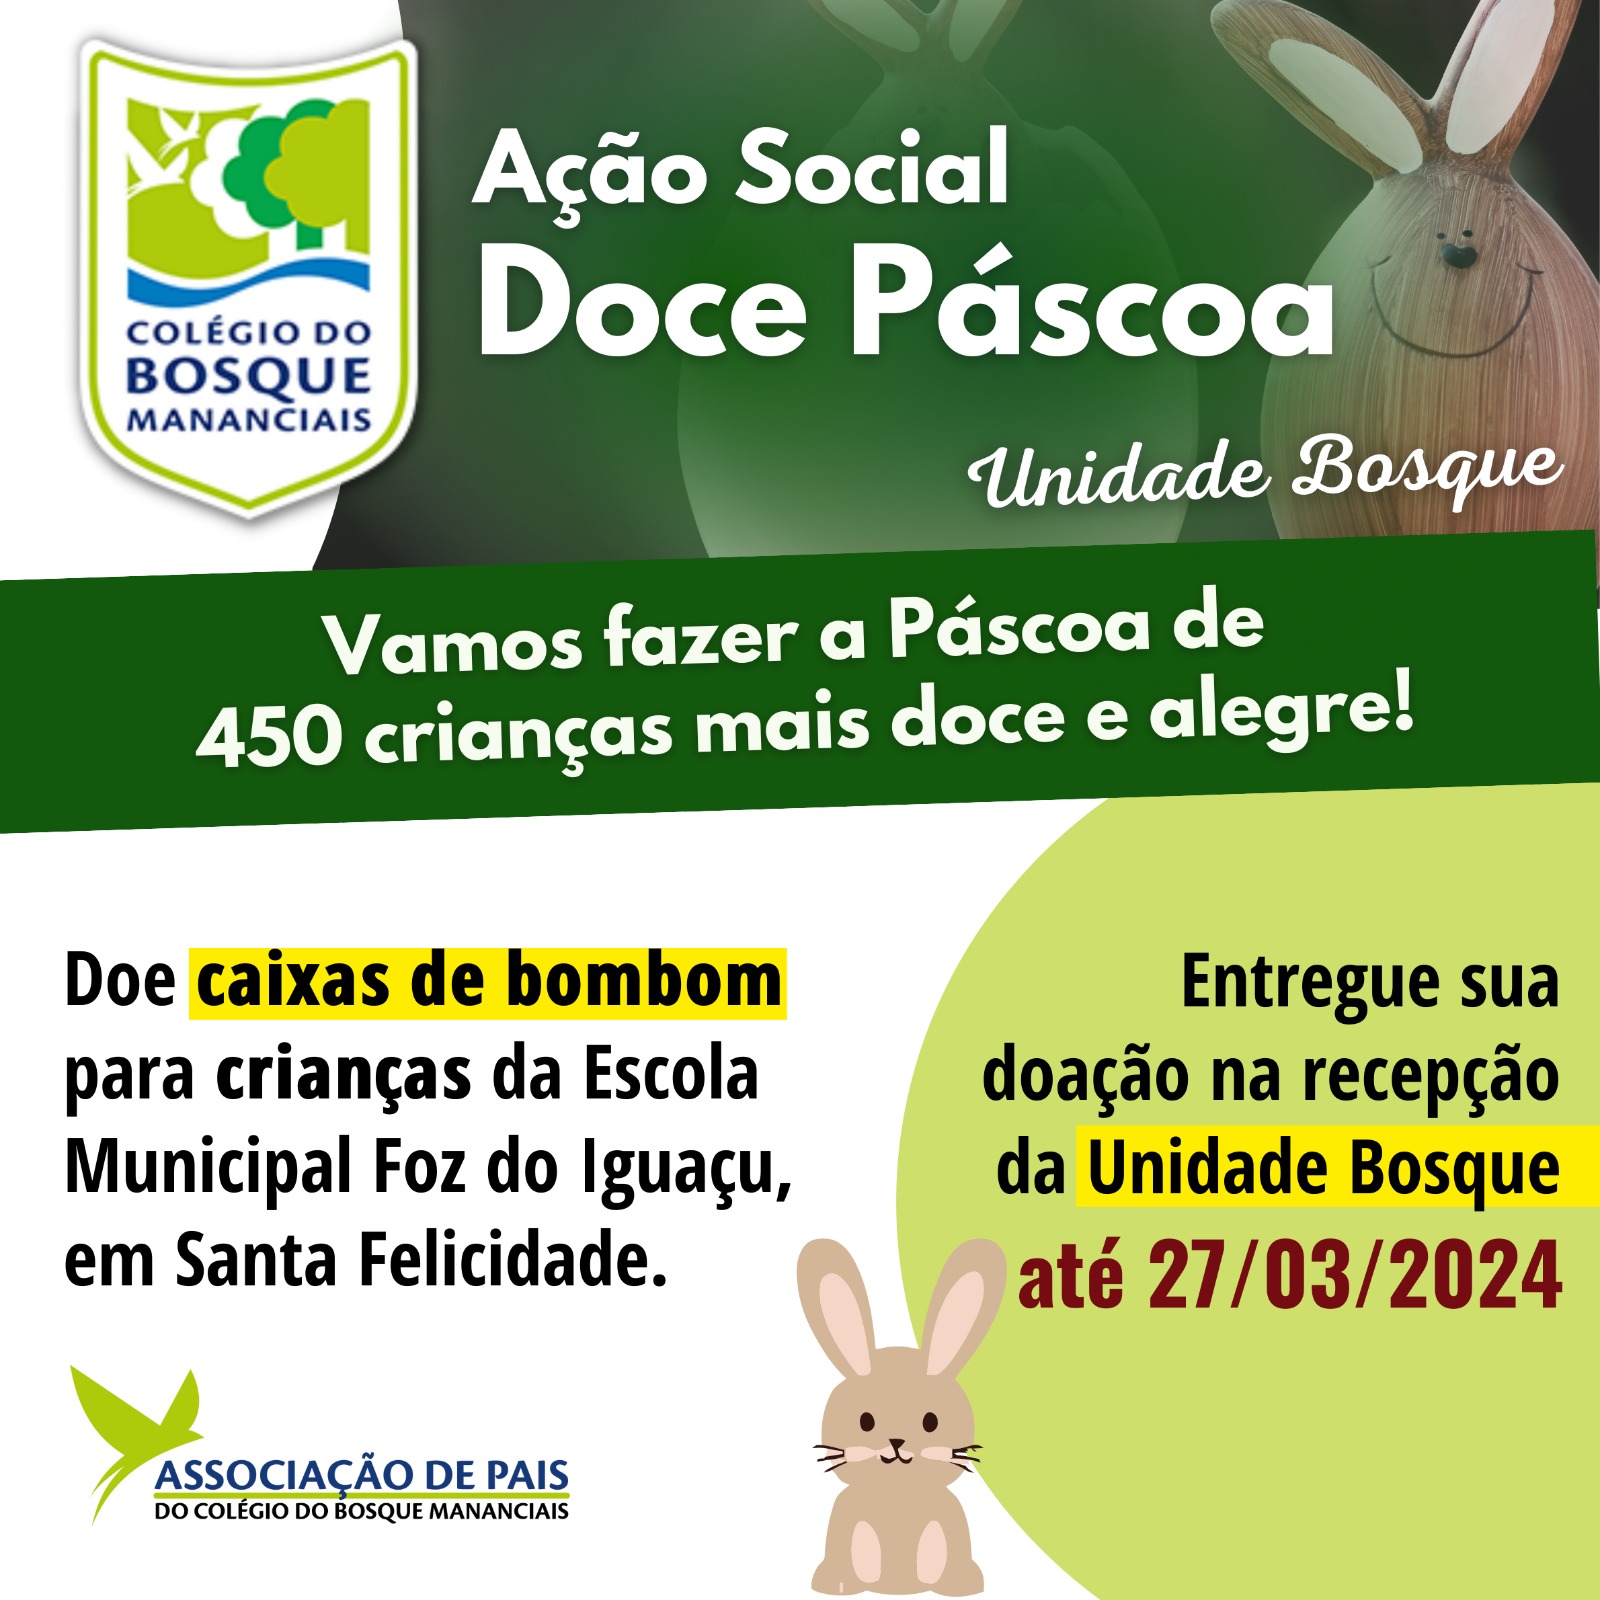 AÇÃO SOCIAL DOCE PÁSCOA